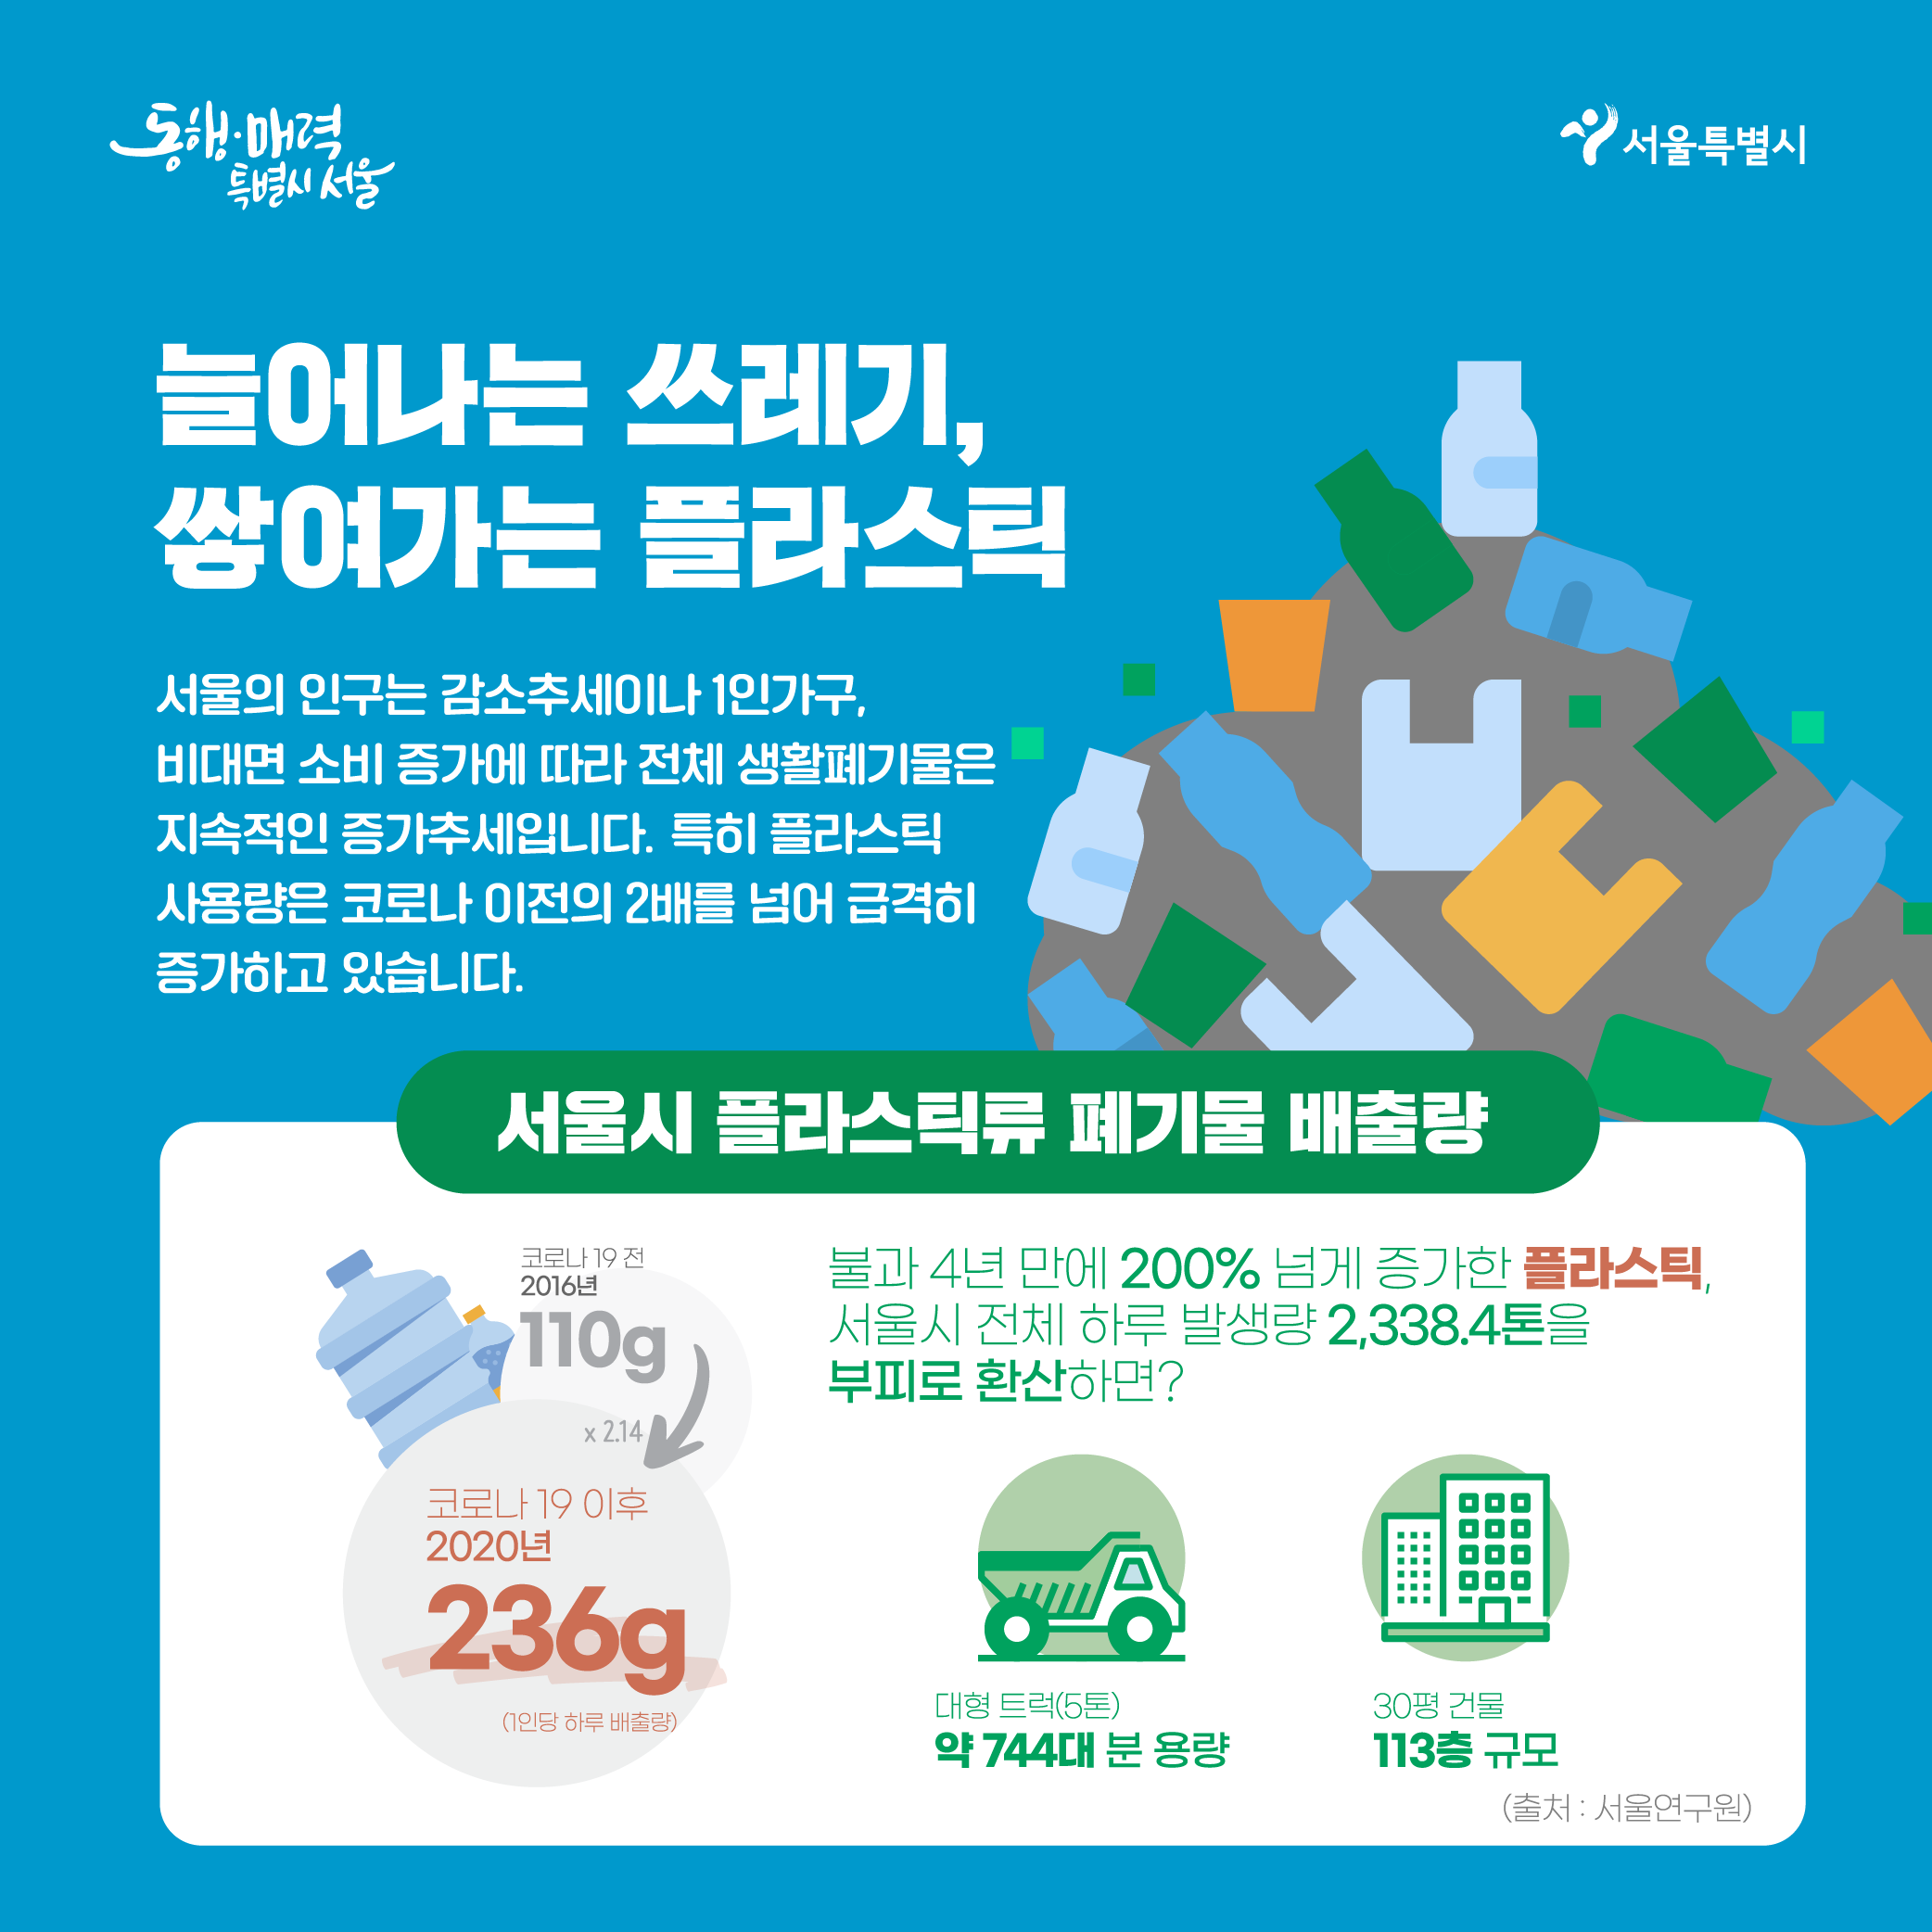 늘어나는 쓰레기, 쌓여가는 플라스틱 - 서울의 인구는 감소추세이나 1인가구, 비대면 소비 증가에 따라 전체 생활폐기물은 지속적인 증가추세입니다. 특히 플라스틱 사용량은 코로나 이전의 2배를 넘어 급격히 증가하고 있습니다. ㅇ서울시 플라스틱류 폐기물 배출량 - 코로나 19 전 2016년 110g - /> 코로나 19 이후 2020년 236g (214배증가) -불과 4년만에 200% 넘게 증가한 플라스틱, 서울시 전체 하루 발생량 2,388.4톤을 부피로 환산하면? 대형트럭(5톤) 약 744대 분 용량, 30평 건물 113층 규모 (출처:서울연구원)